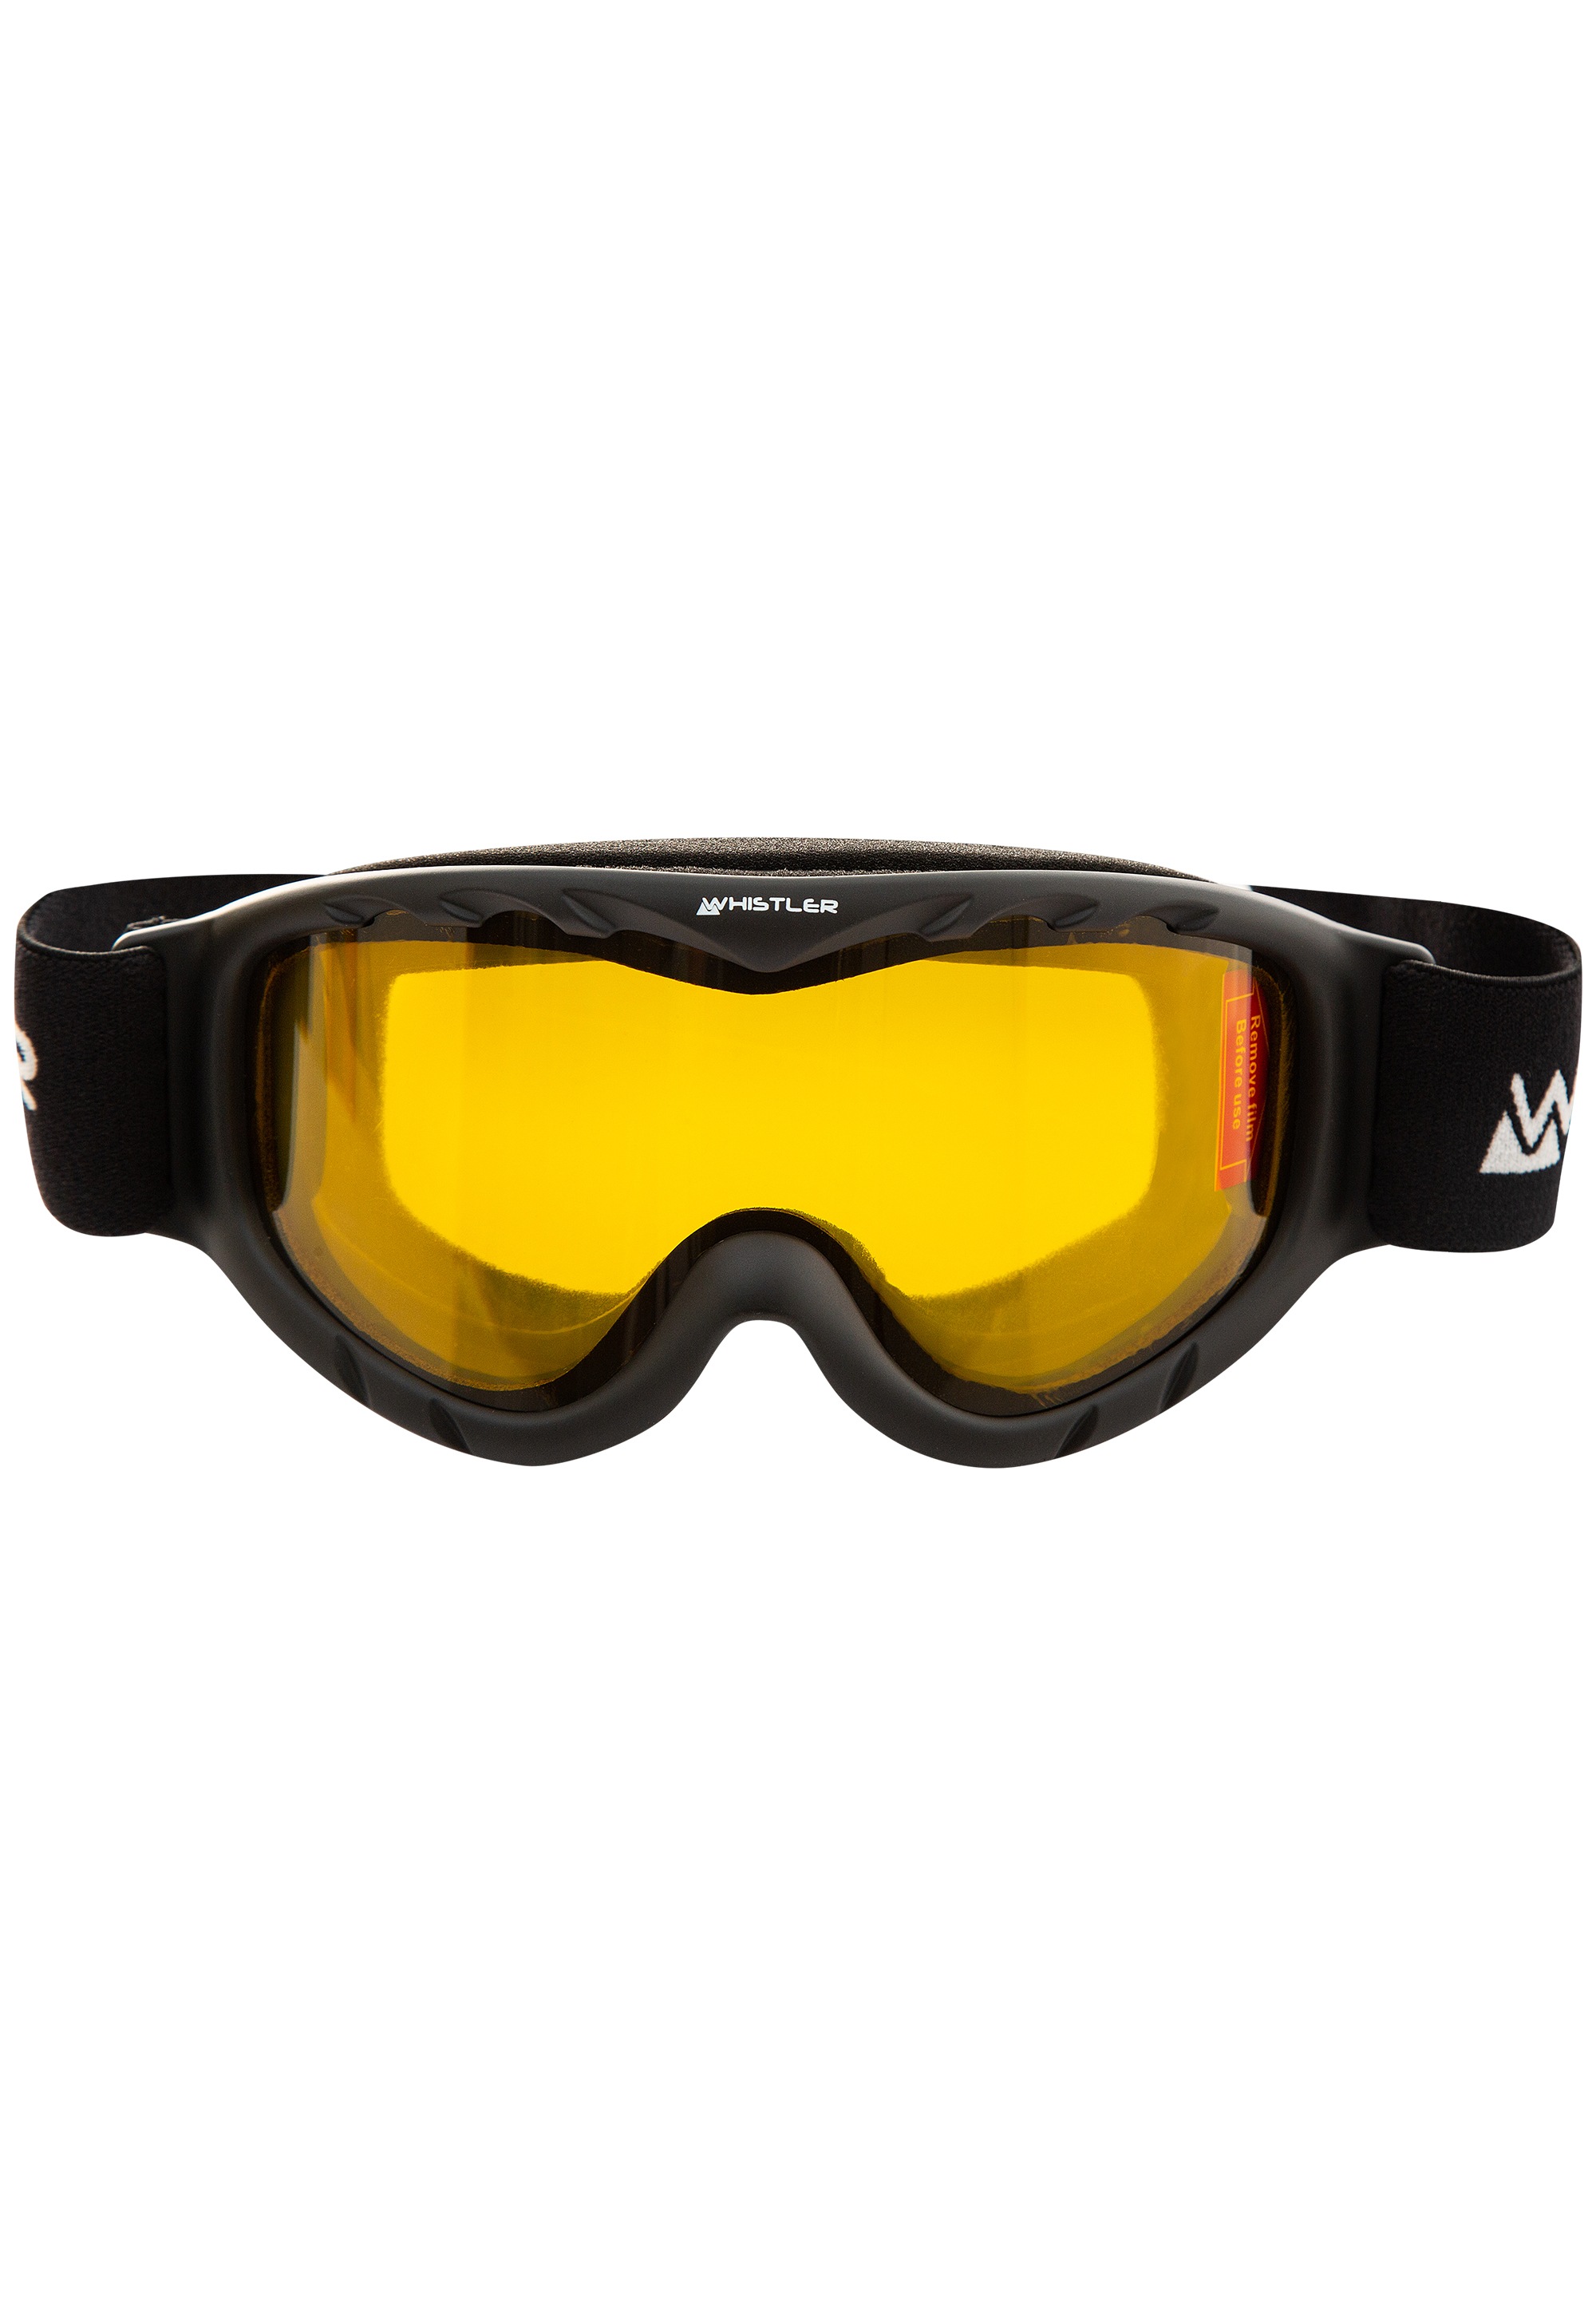 WHISTLER Skibrille "WS300 Jr. Ski Goggle", mit Anti-Fog-Beschichtung